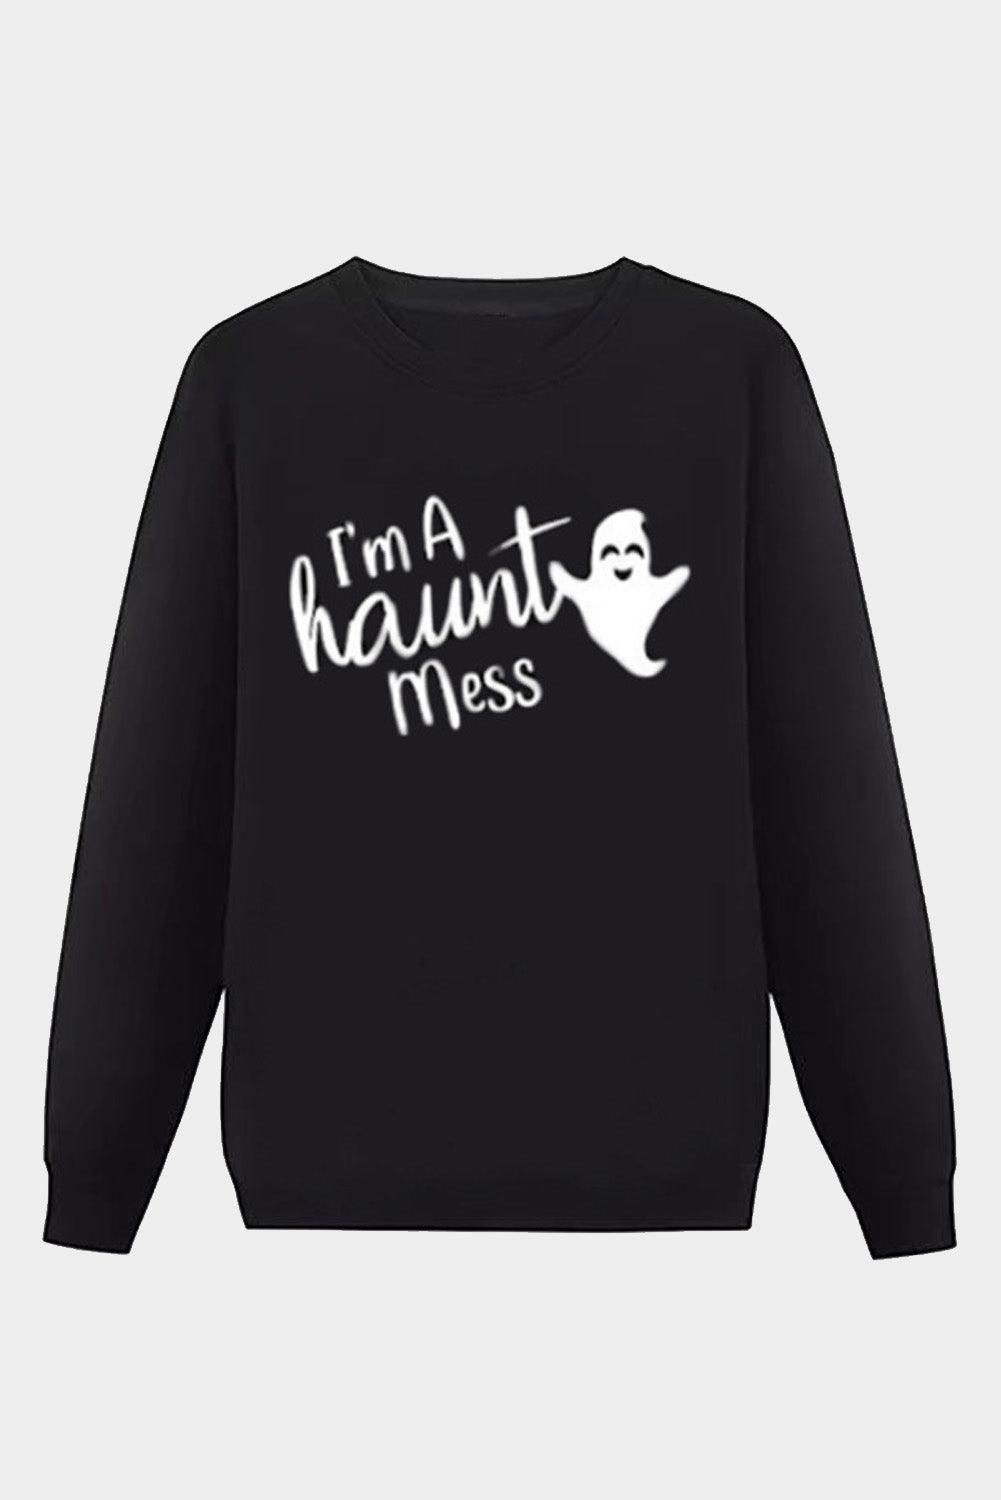 Halloween Letter Ghost Print Crew Neck Men's Sweatshirt - L & M Kee, LLC